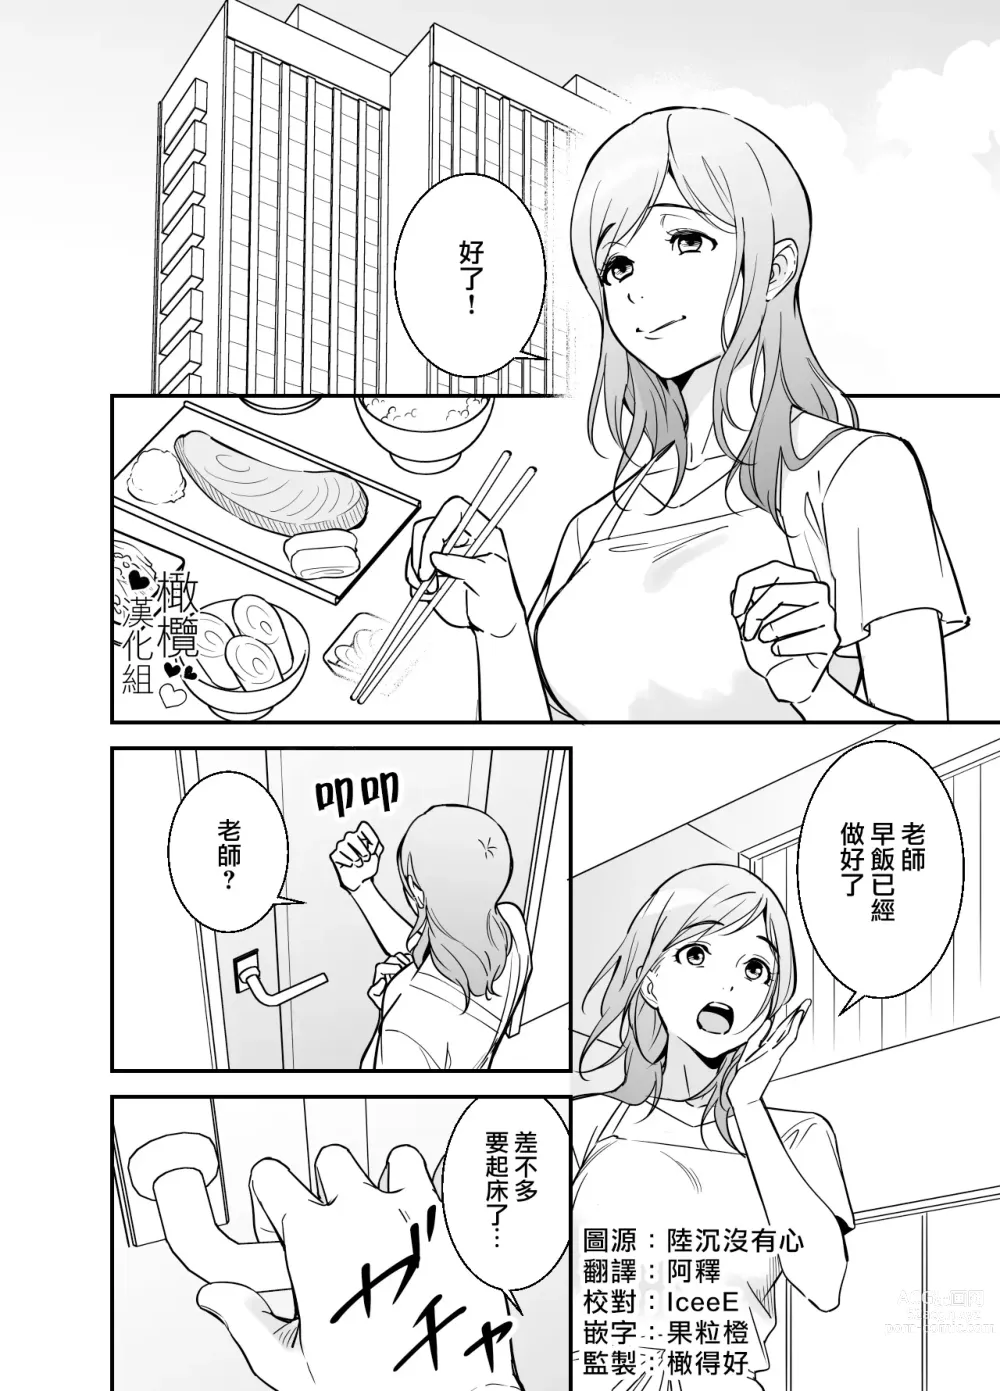 Page 1 of doujinshi 处男小说家和家政妇小姐